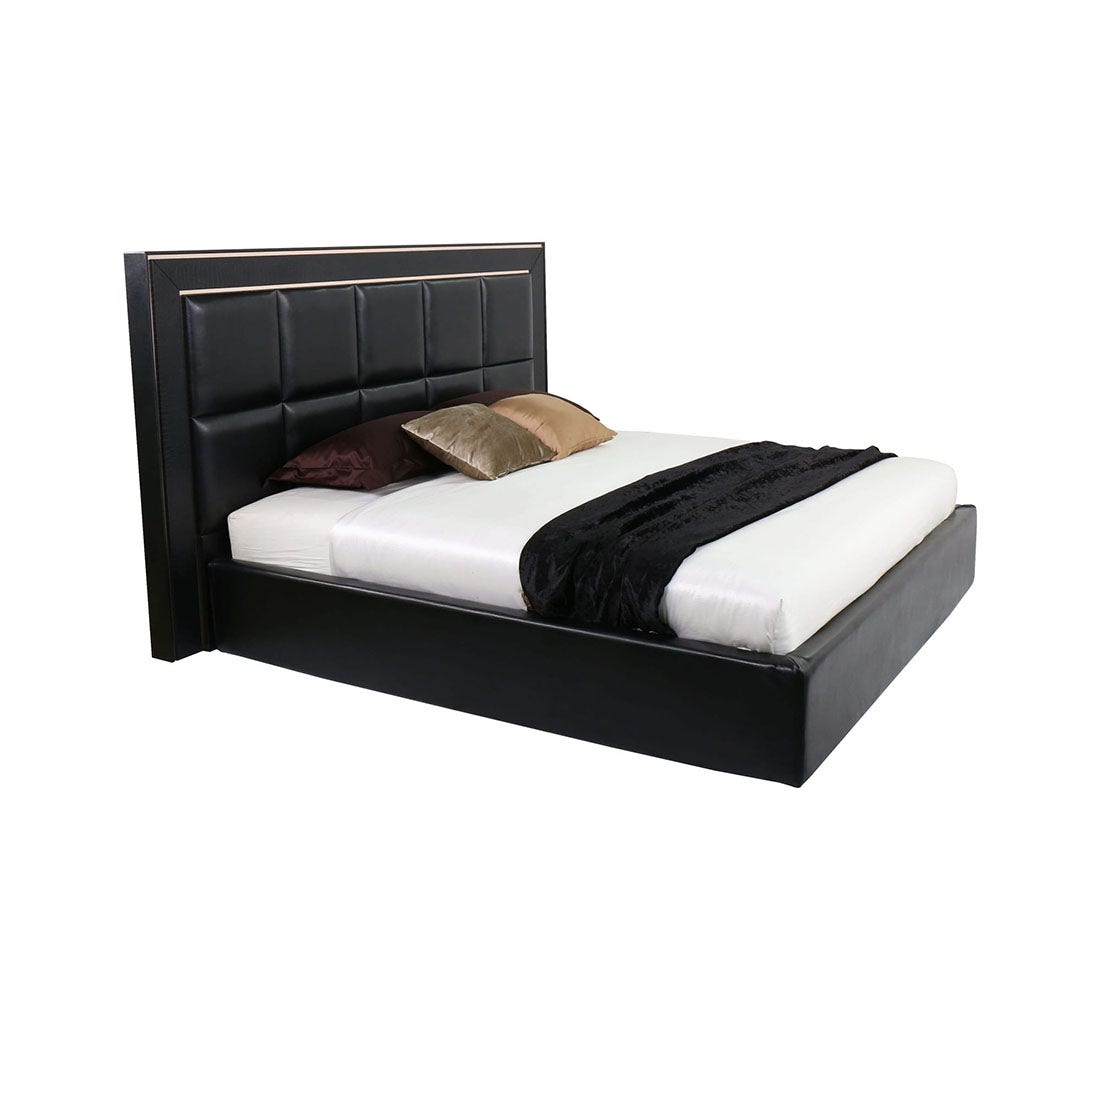 เตียงนอน ขนาด 6 ฟุต รุ่น Bellini สีดำ-01